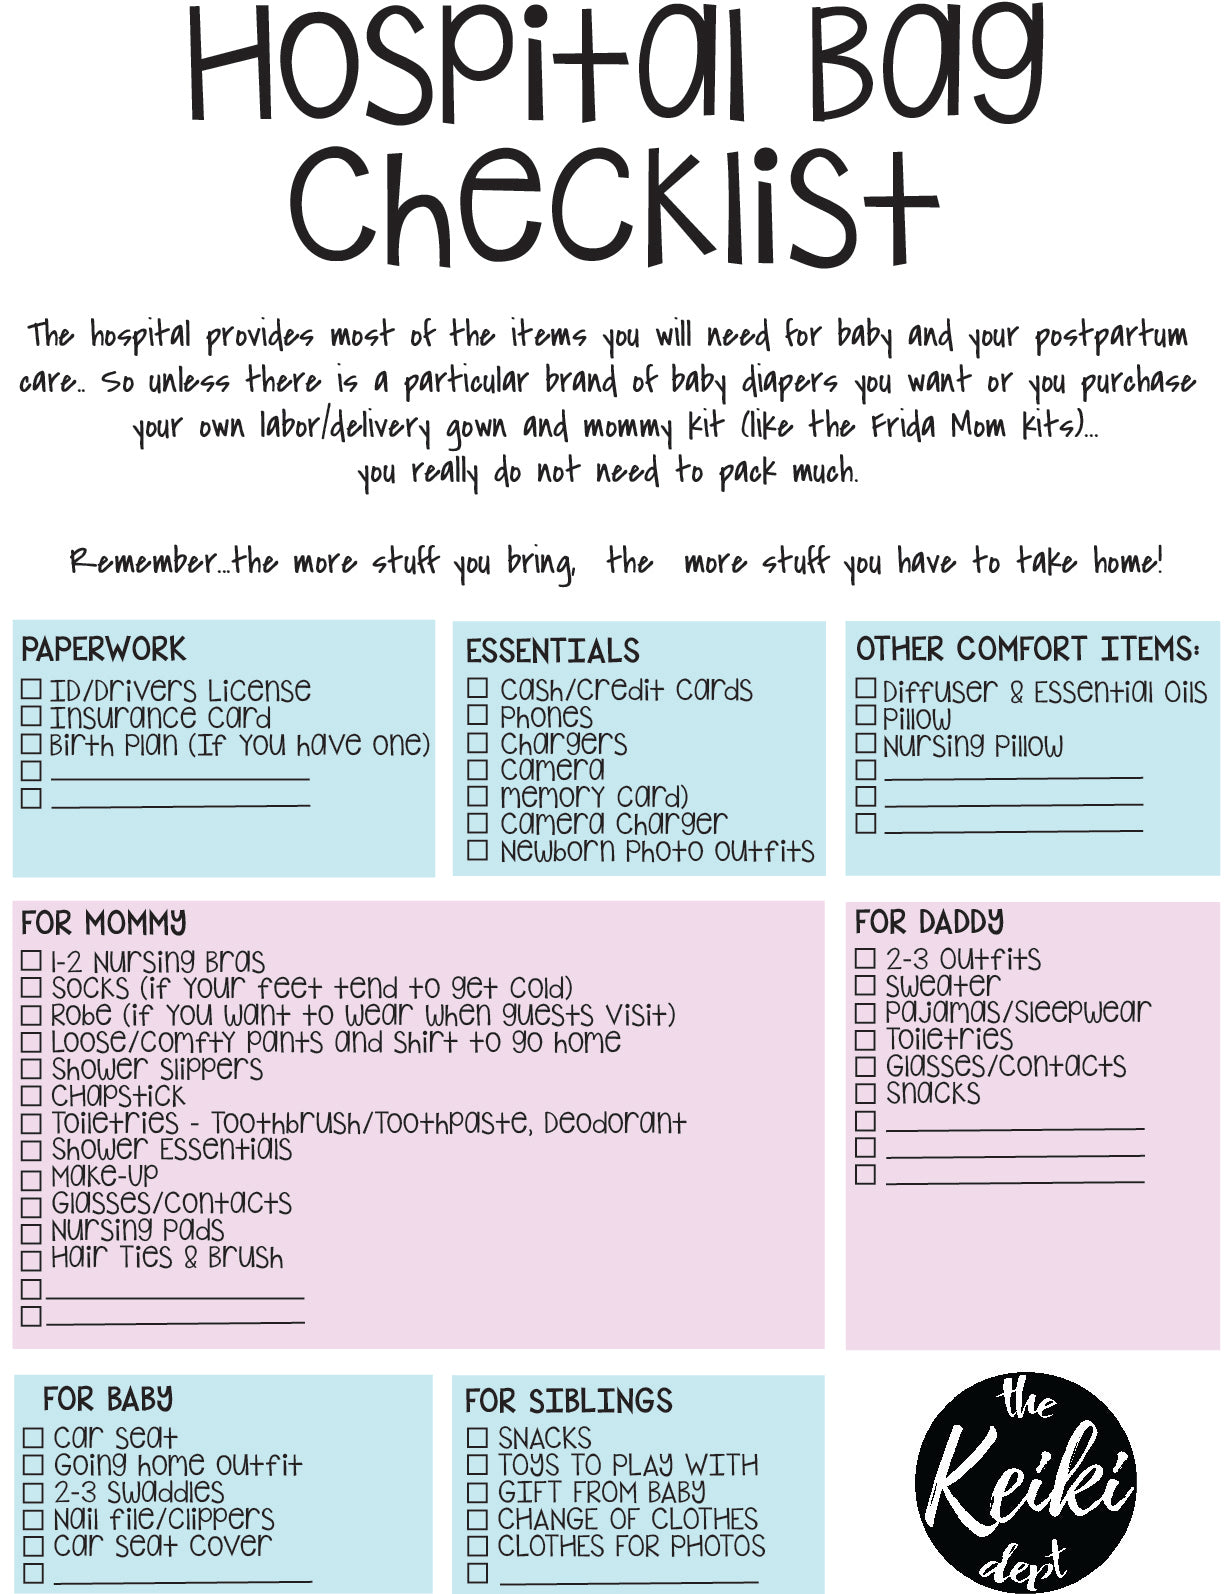 hospital checklist by the keiki dept